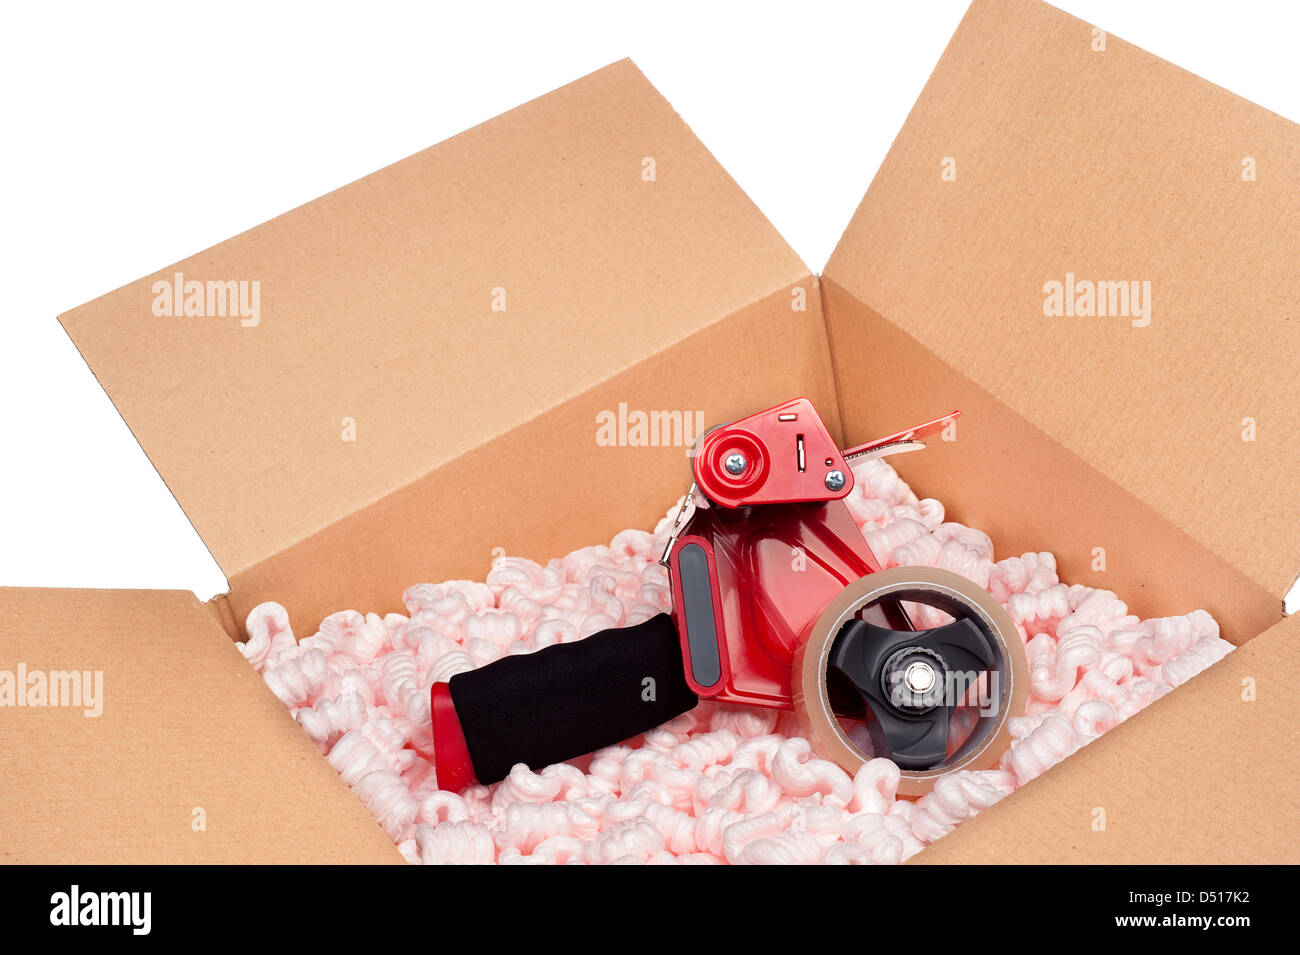 Eine Kiste voller schützende Verpackung Erdnüsse und eine Bandspender, bereit zum Versand versiegelt werden. Stockfoto